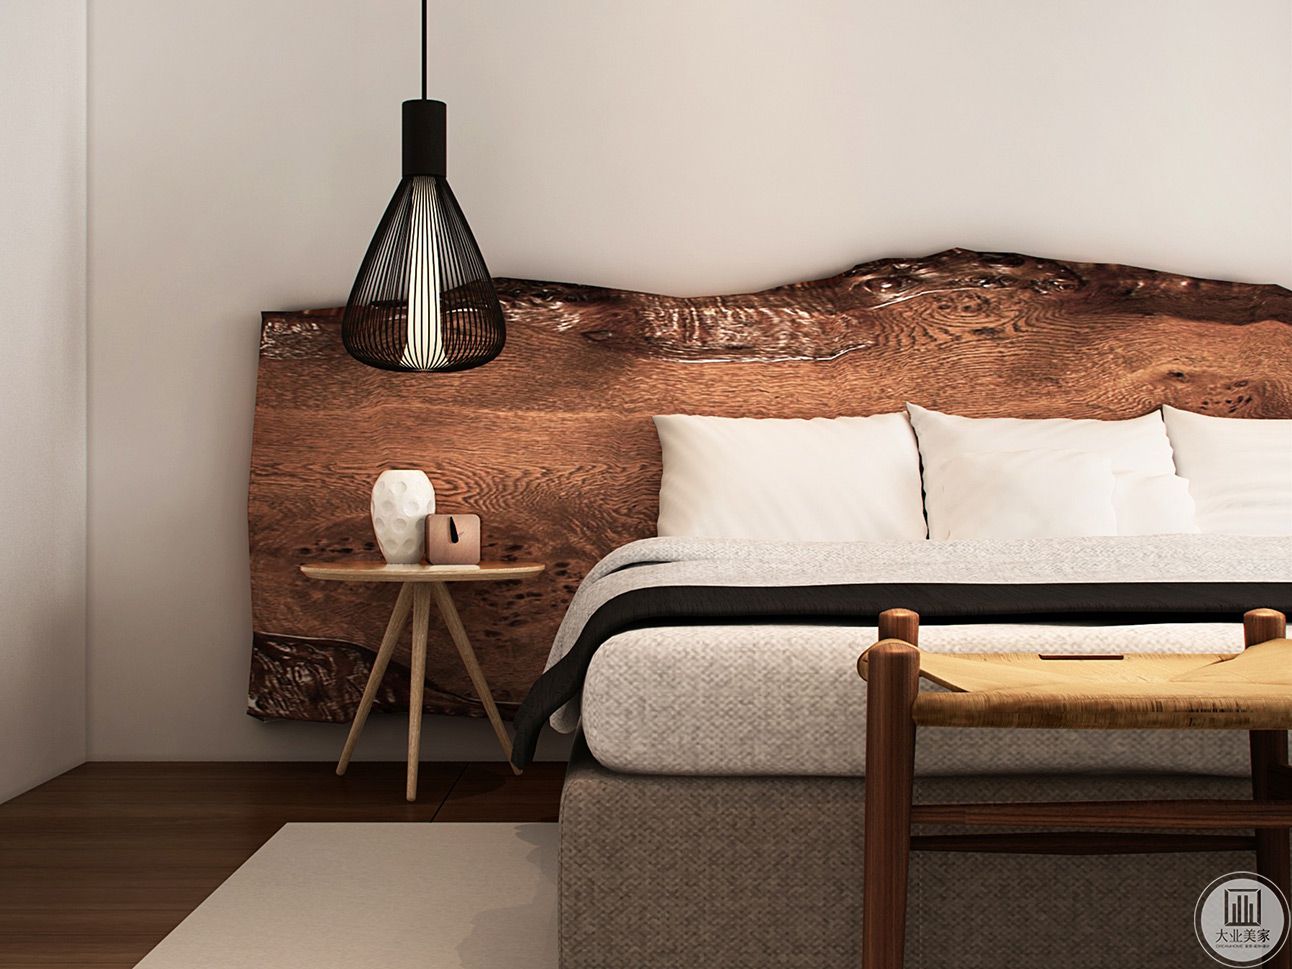 床头为木质，整体感觉与整个房间相似的色调，并搭配浅色的地毯，给人一种简洁感觉